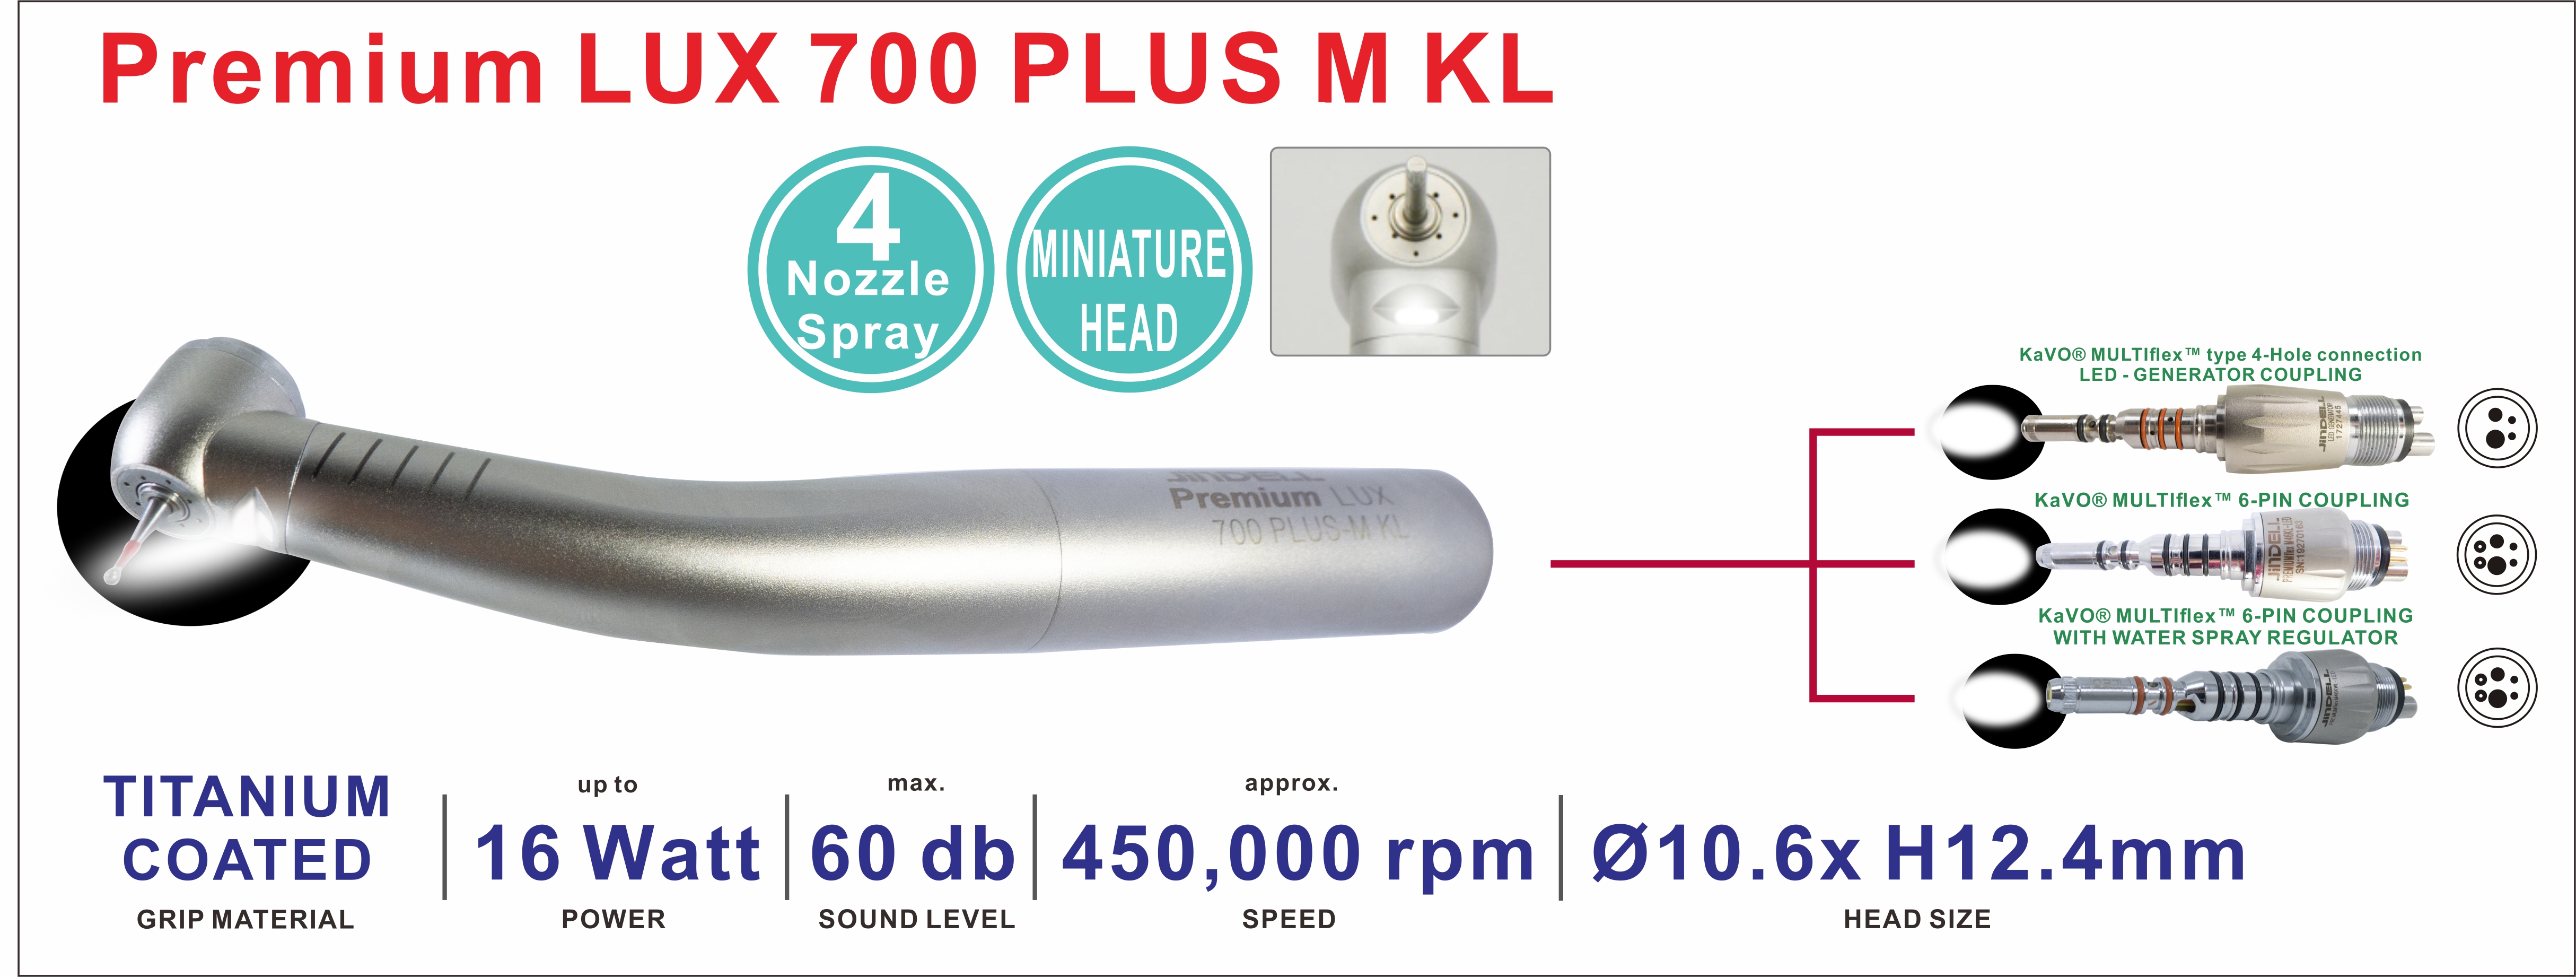 Premium LUX 700+M KL 